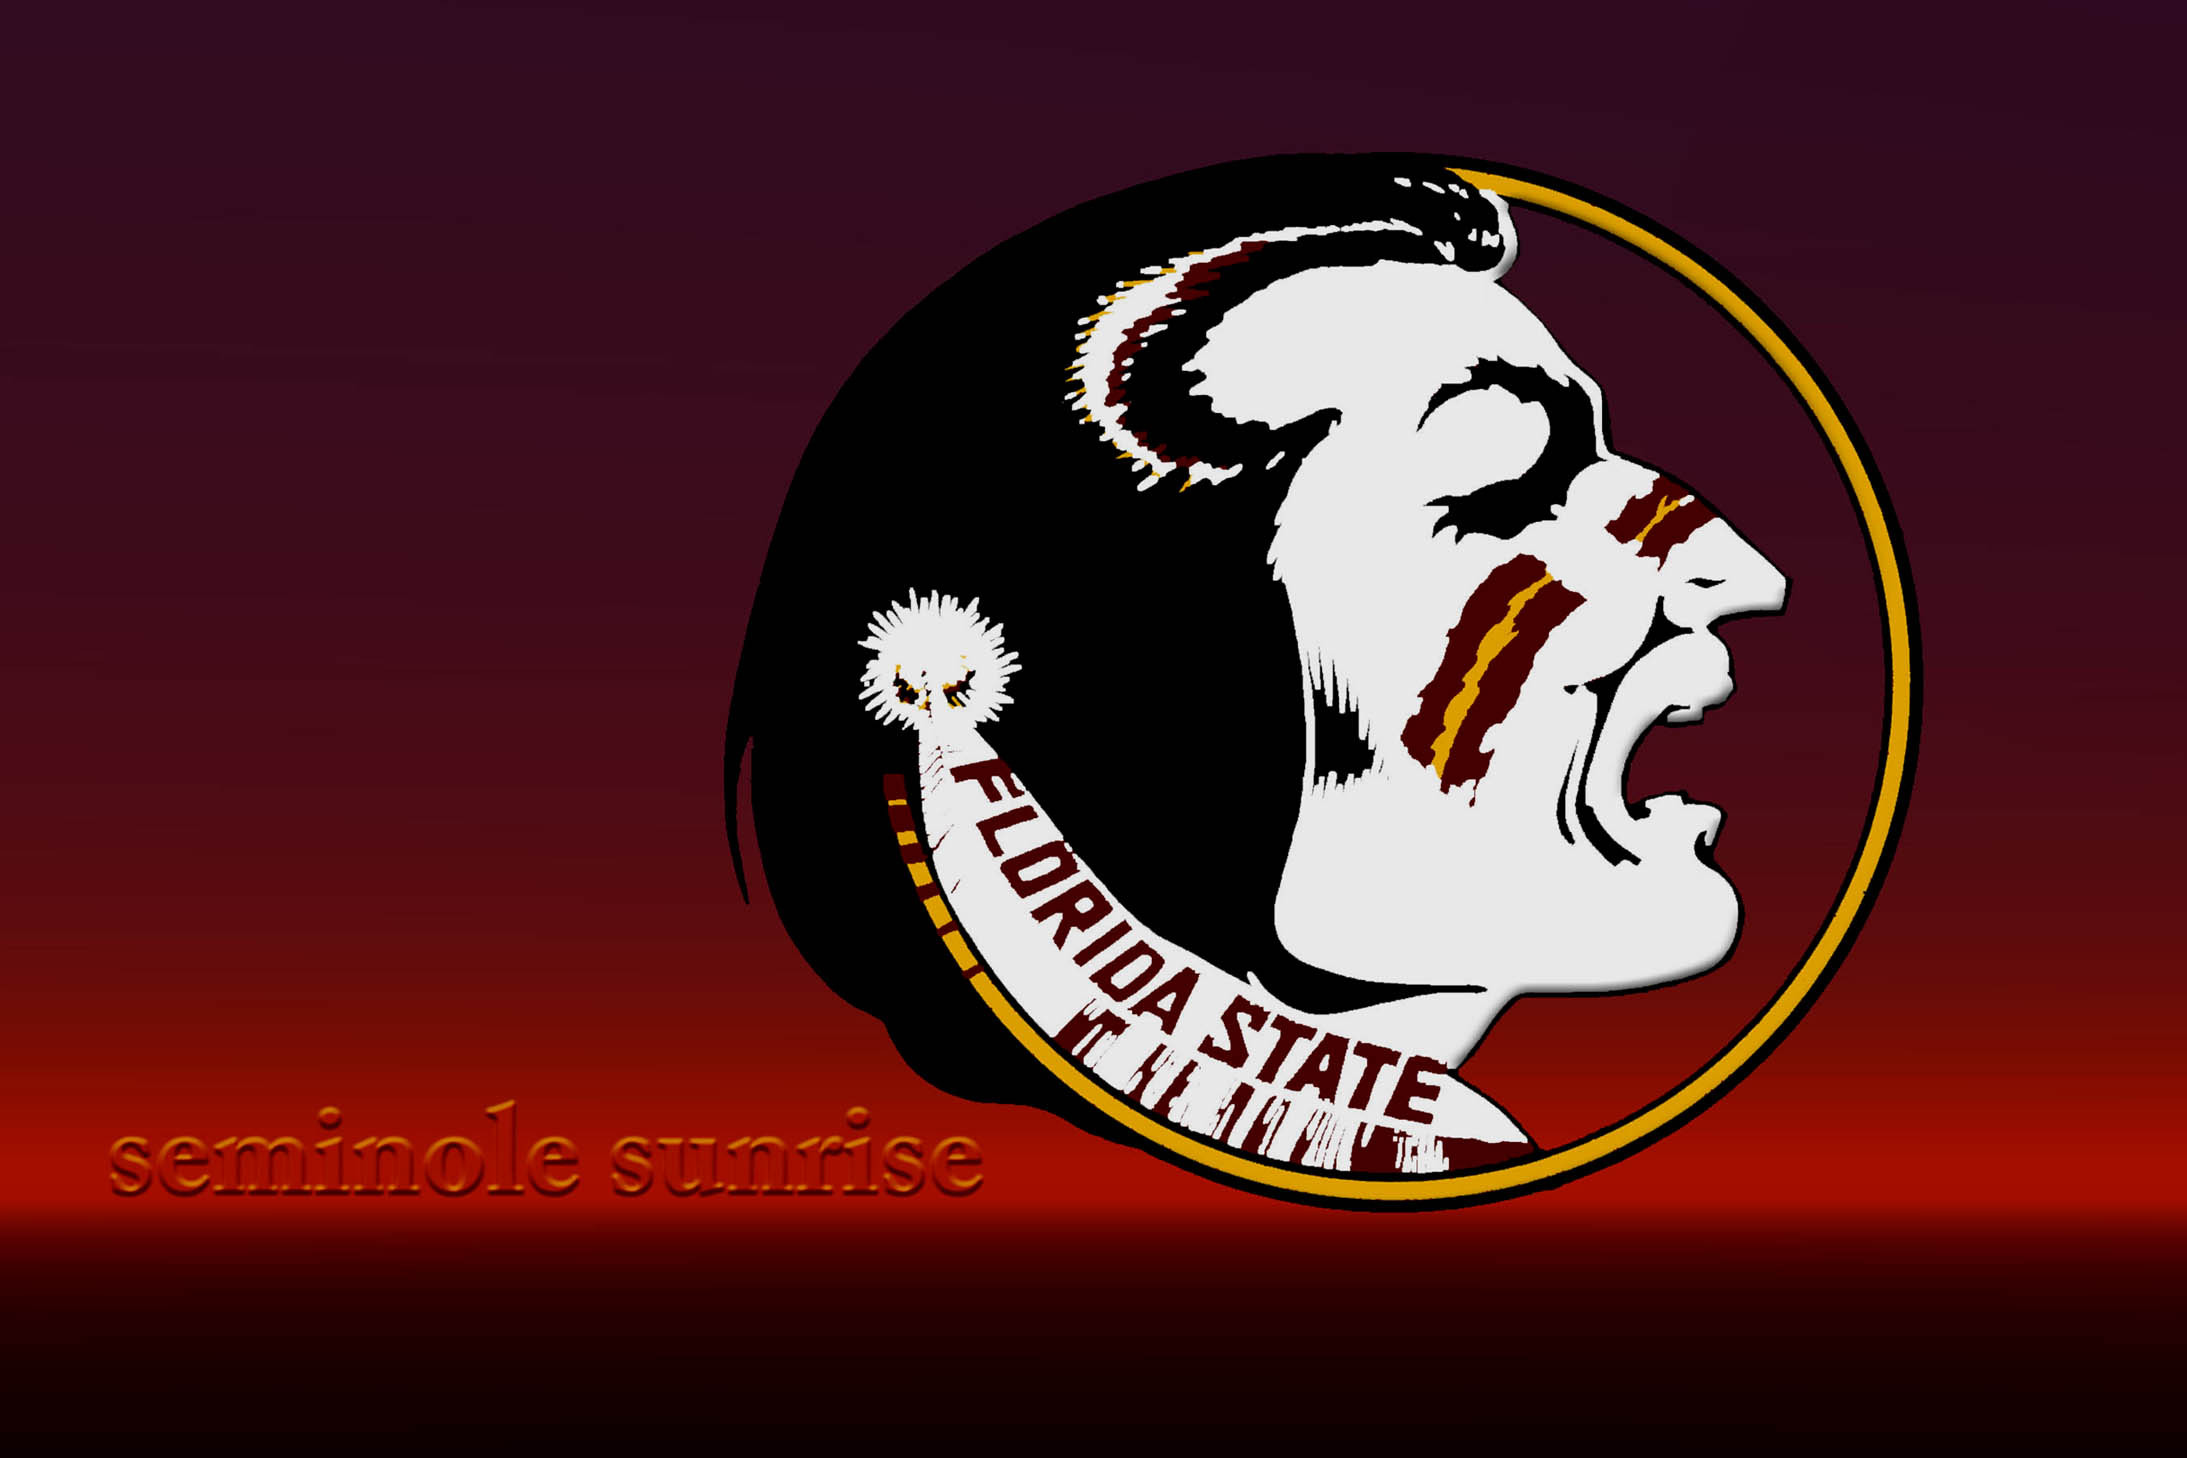 Forida State Seminoles College Football Wallpaper